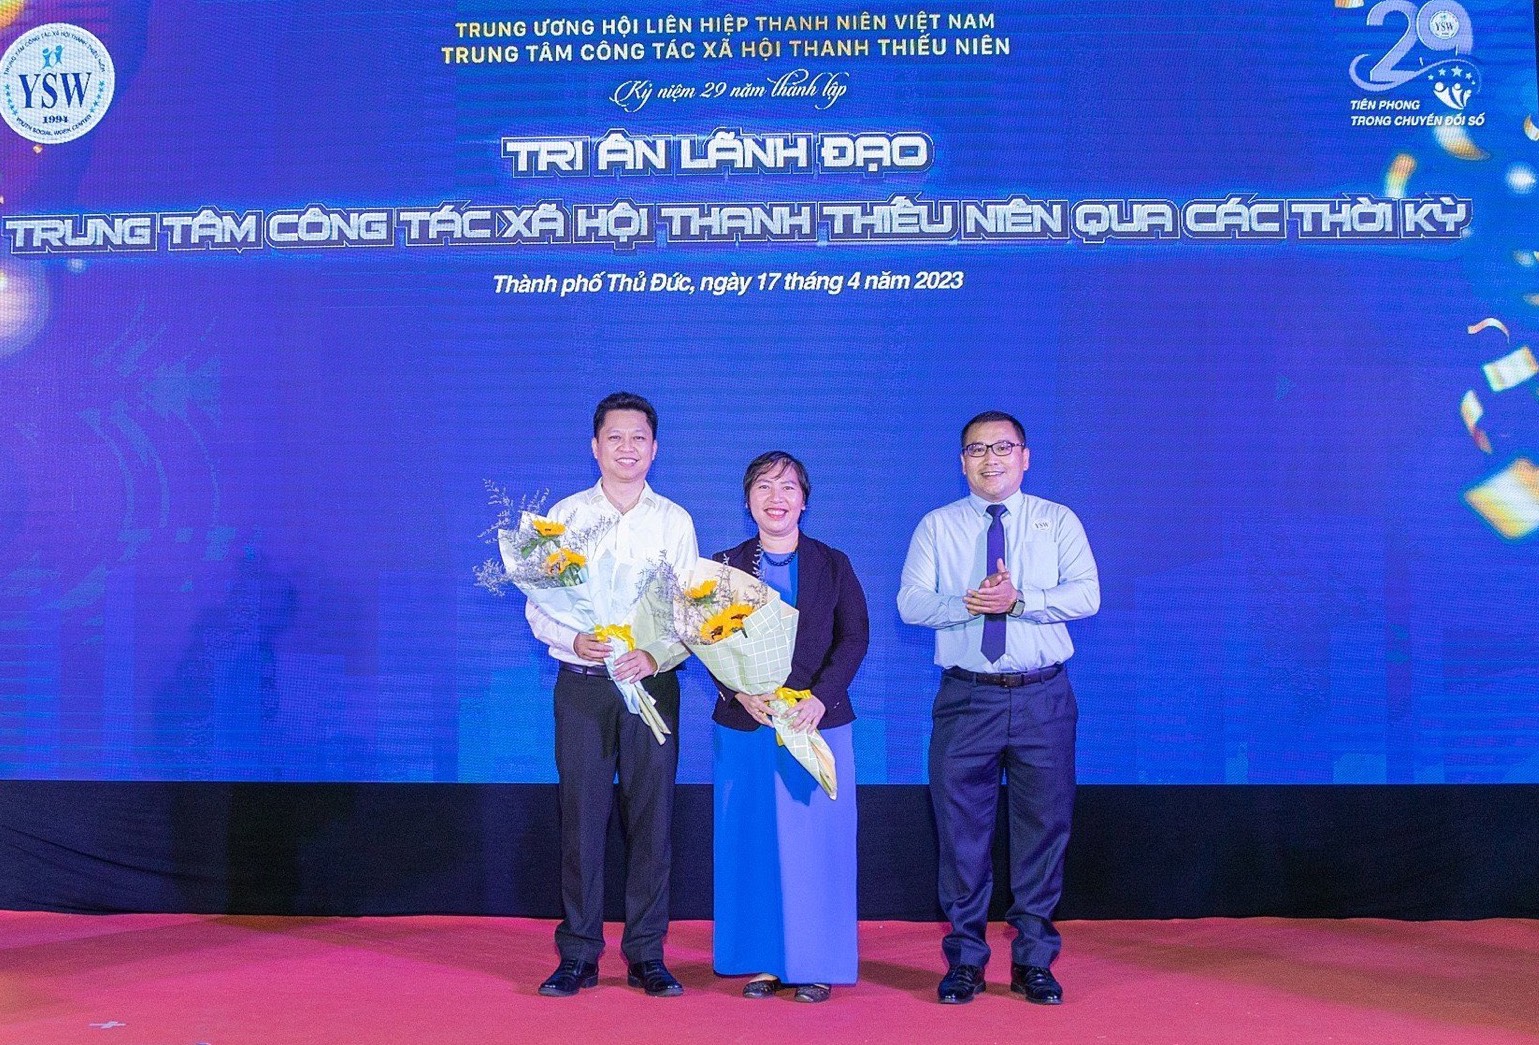 Chuyển đổi số công tác xã hội: Thành lập Cộng đồng công tác xã hội Việt Nam - Ảnh 4.